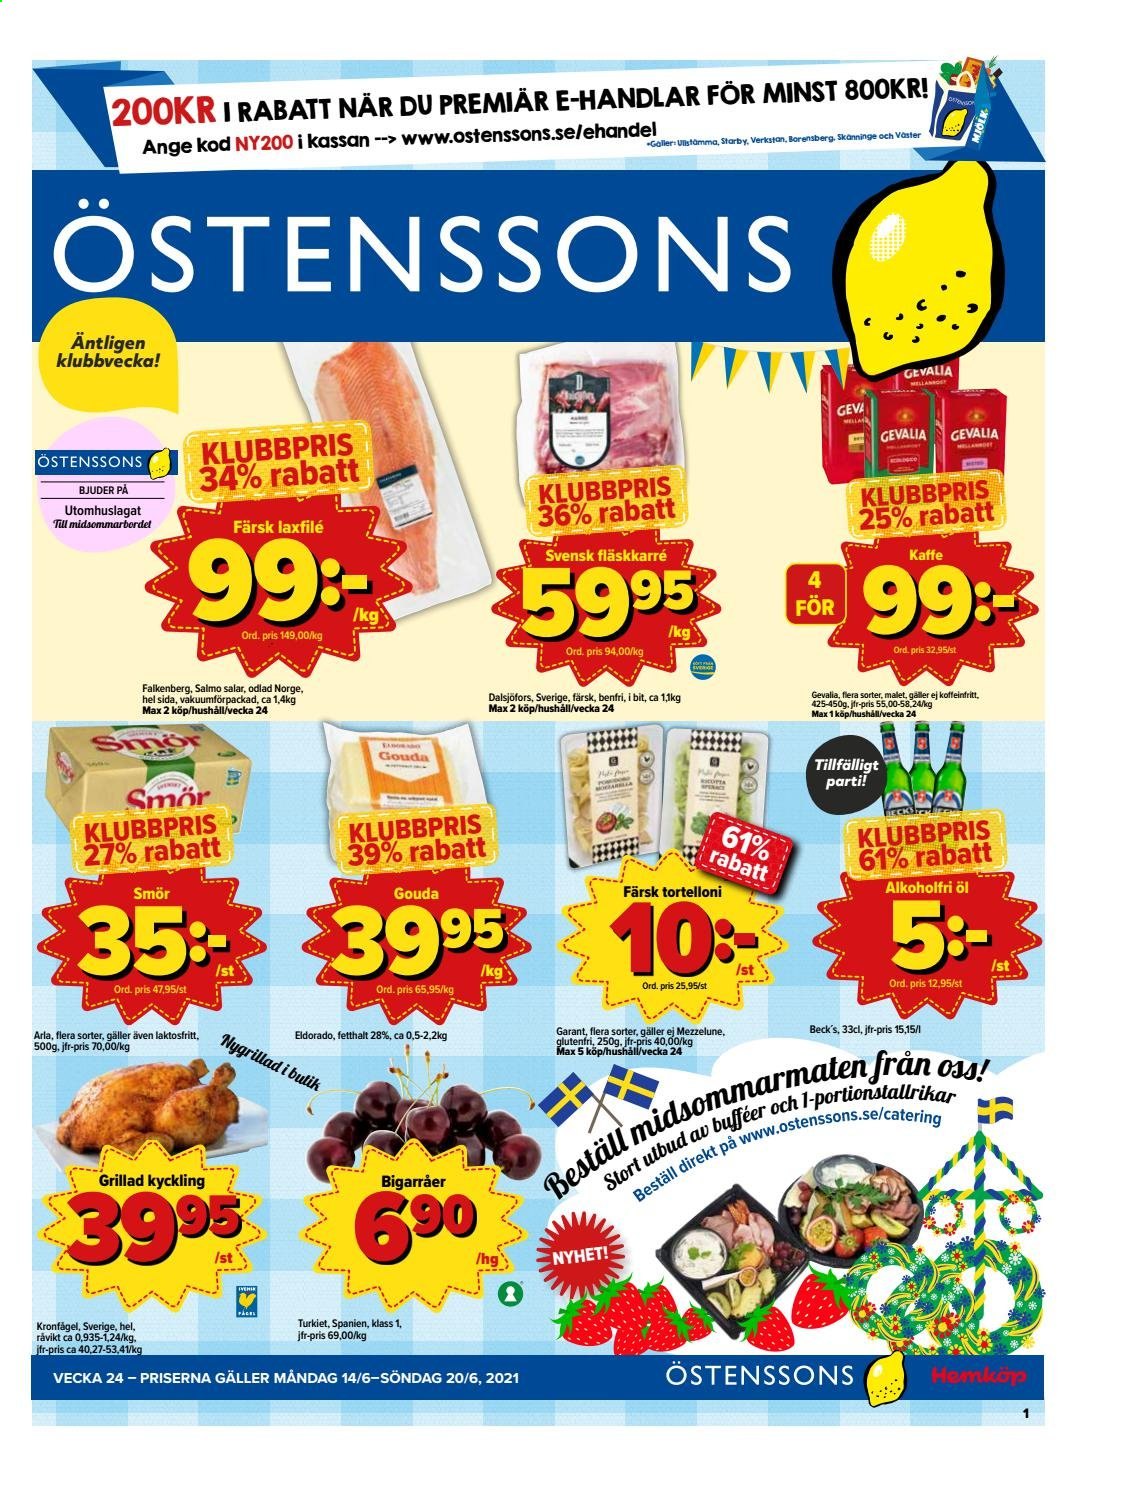 Östenssons reklamblad - 14/6 2021 - 20/6 2021.